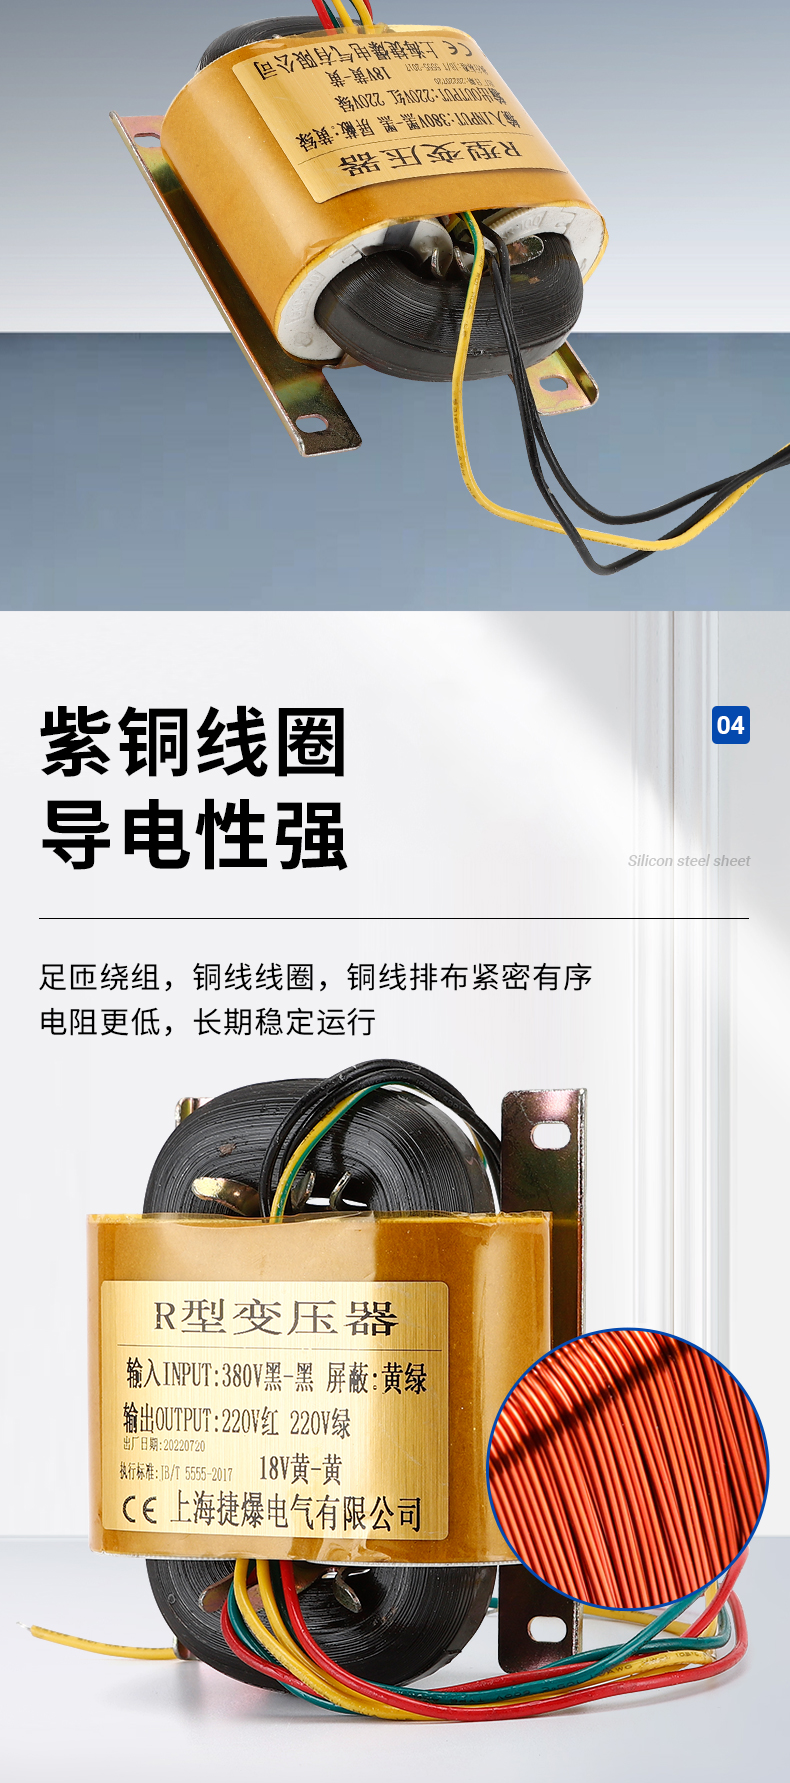 上海市上海单相变压器R型变压器厂家